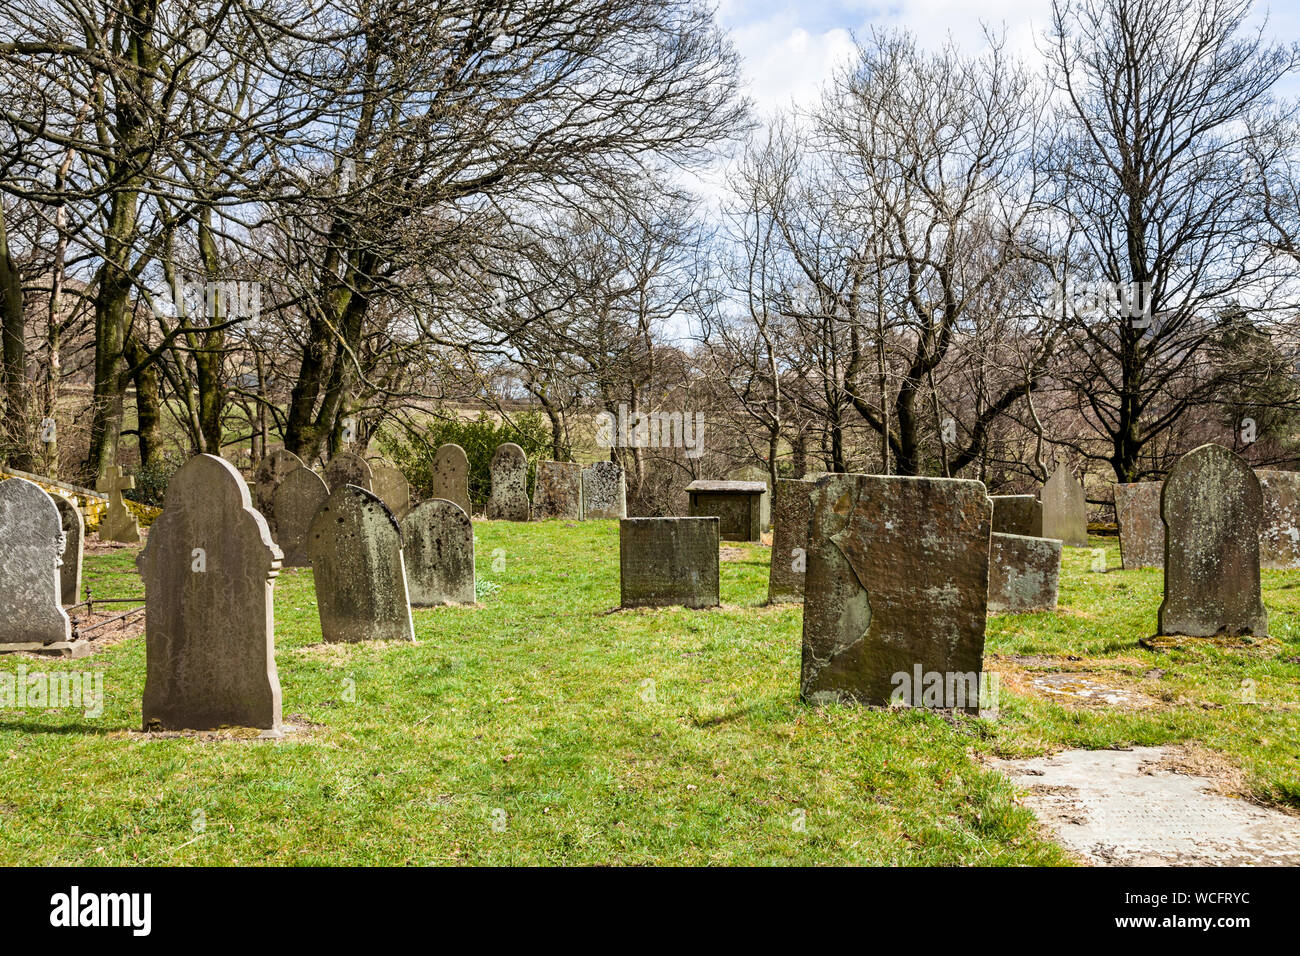 Grabsteine in einem kleinen Friedhof in der Landschaft. Derbyshire, England, Großbritannien Stockfoto